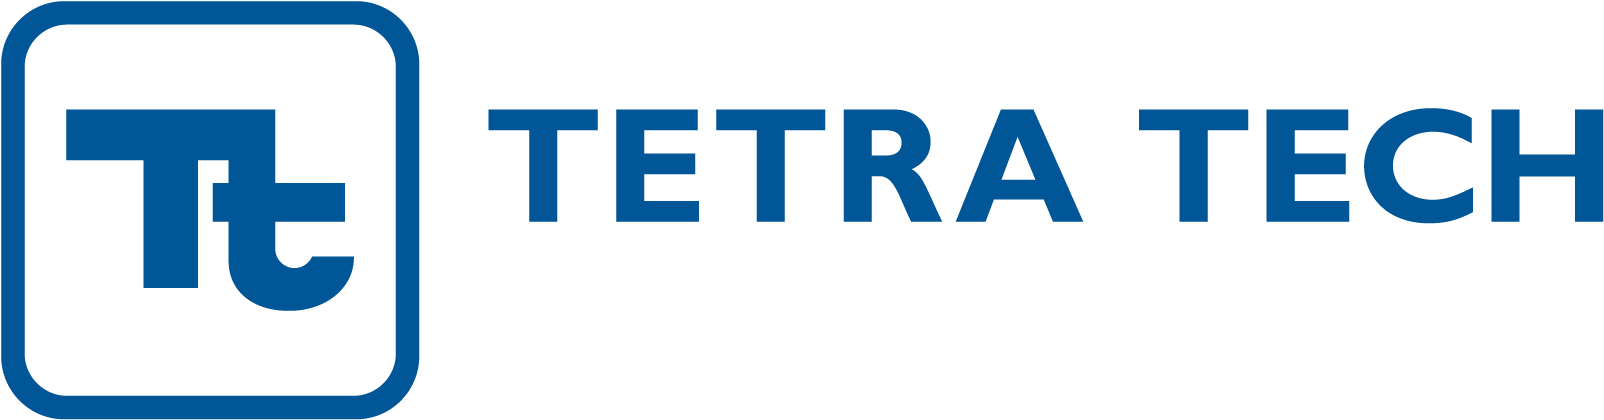 Tetra Tech Company Logo PNG image